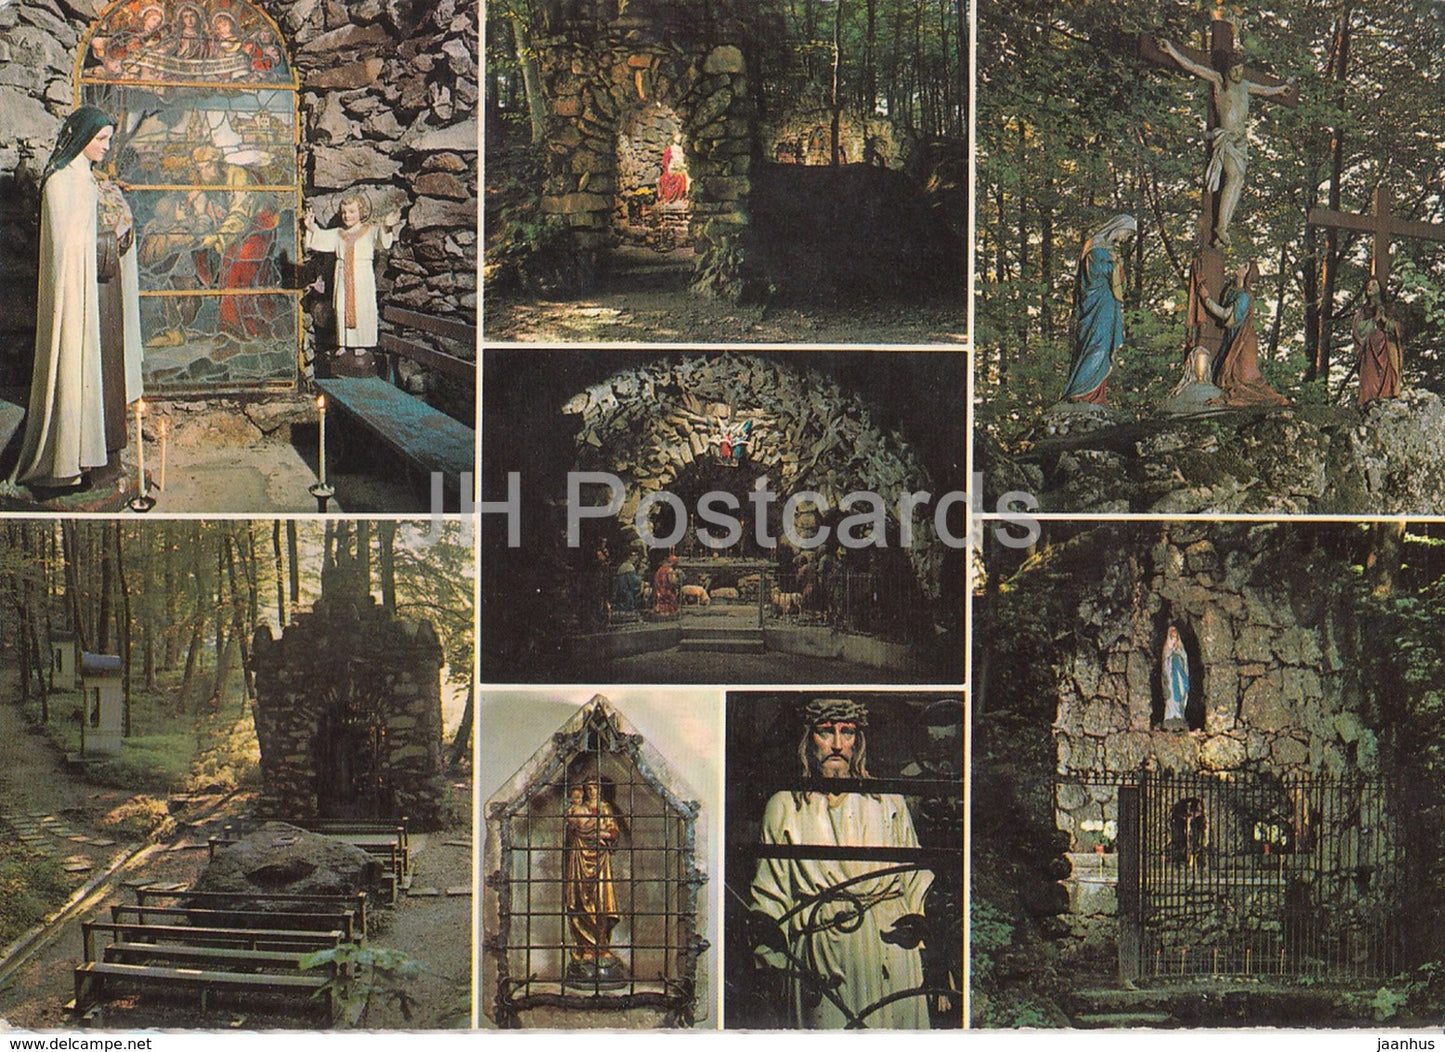 Theresia Kapelle - Jesus im Elend - Kreuzigungsgruppe - Weihnachtsgrotte - Maria Bildstein - Switzerland - unused - JH Postcards